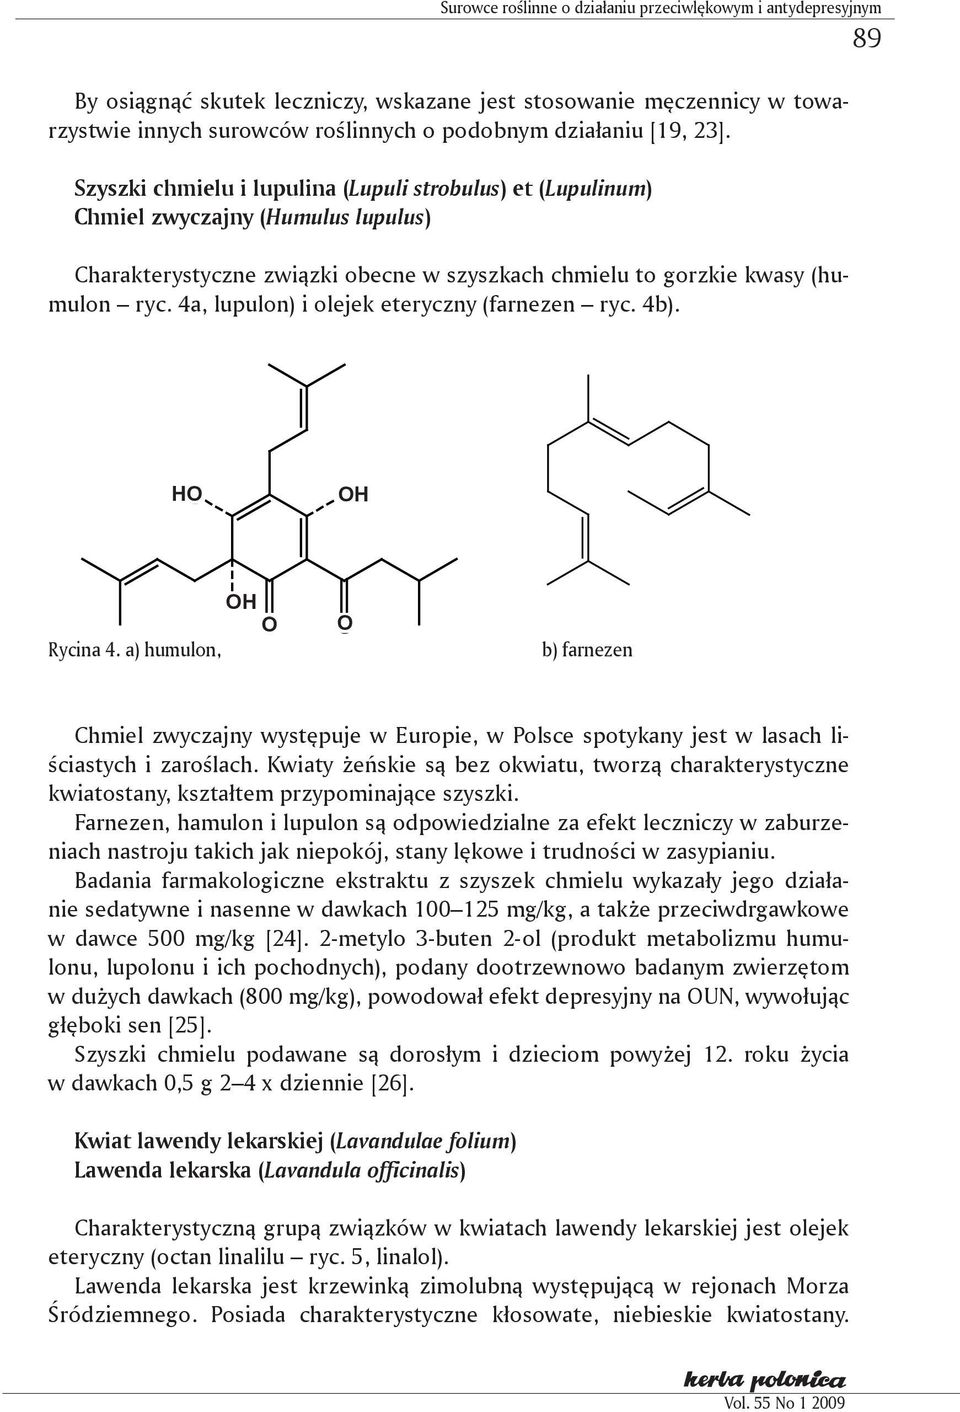 4a, lupulon) i olejek eteryczny (farnezen ryc. 4b). 89 H H H Rycina 4. a) humulon, b) farnezen Chmiel zwyczajny występuje w Europie, w Polsce spotykany jest w lasach liściastych i zaroślach.